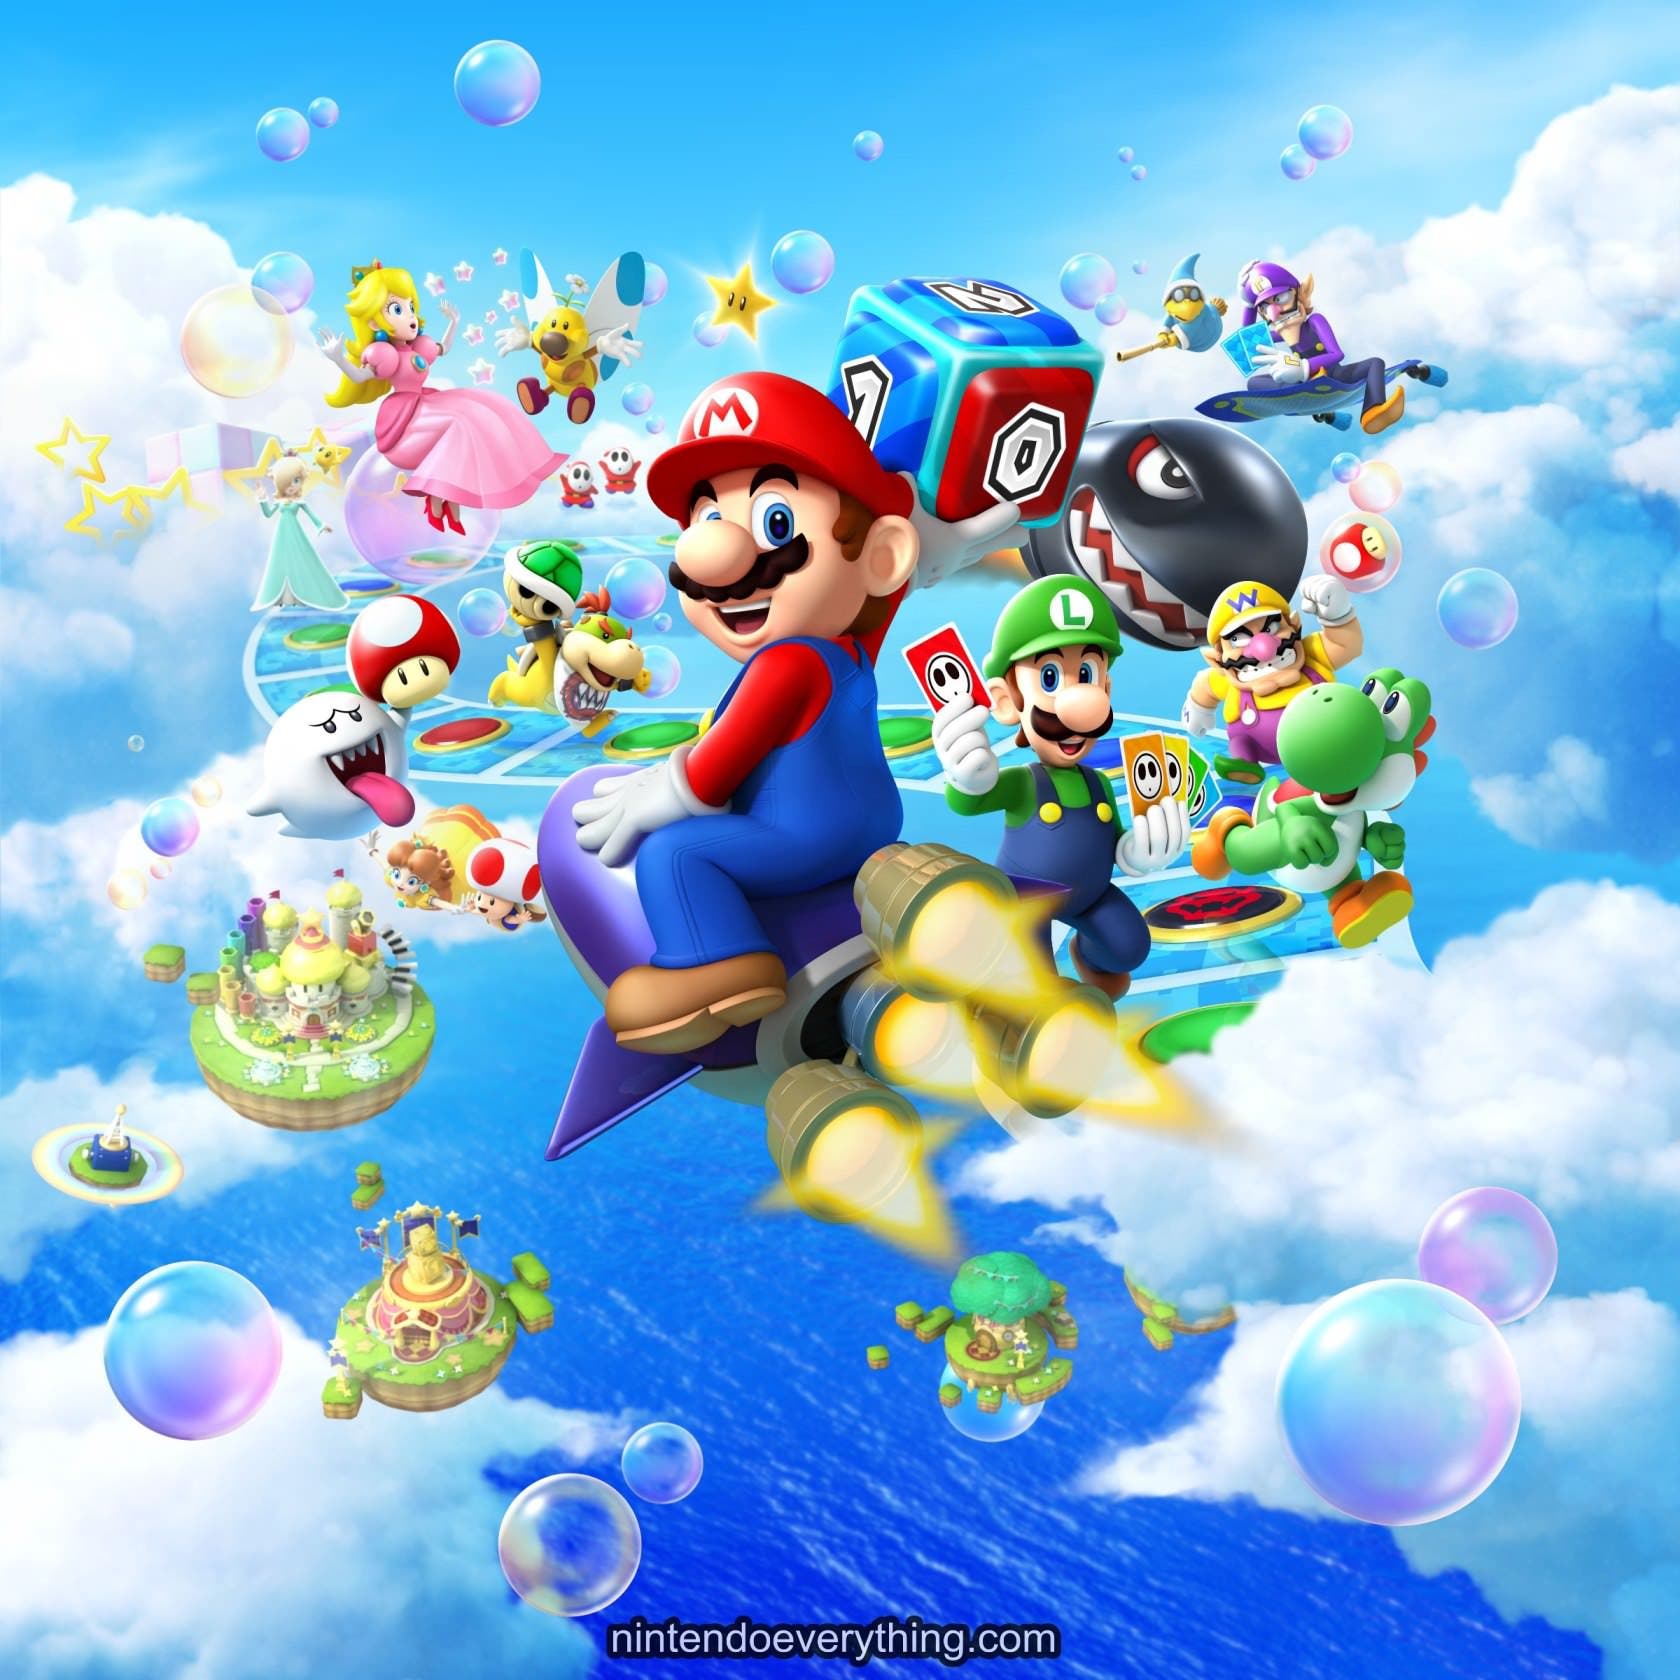 Nintendo comparte nuevas imágenes de ‘Mario Party Island Tour’